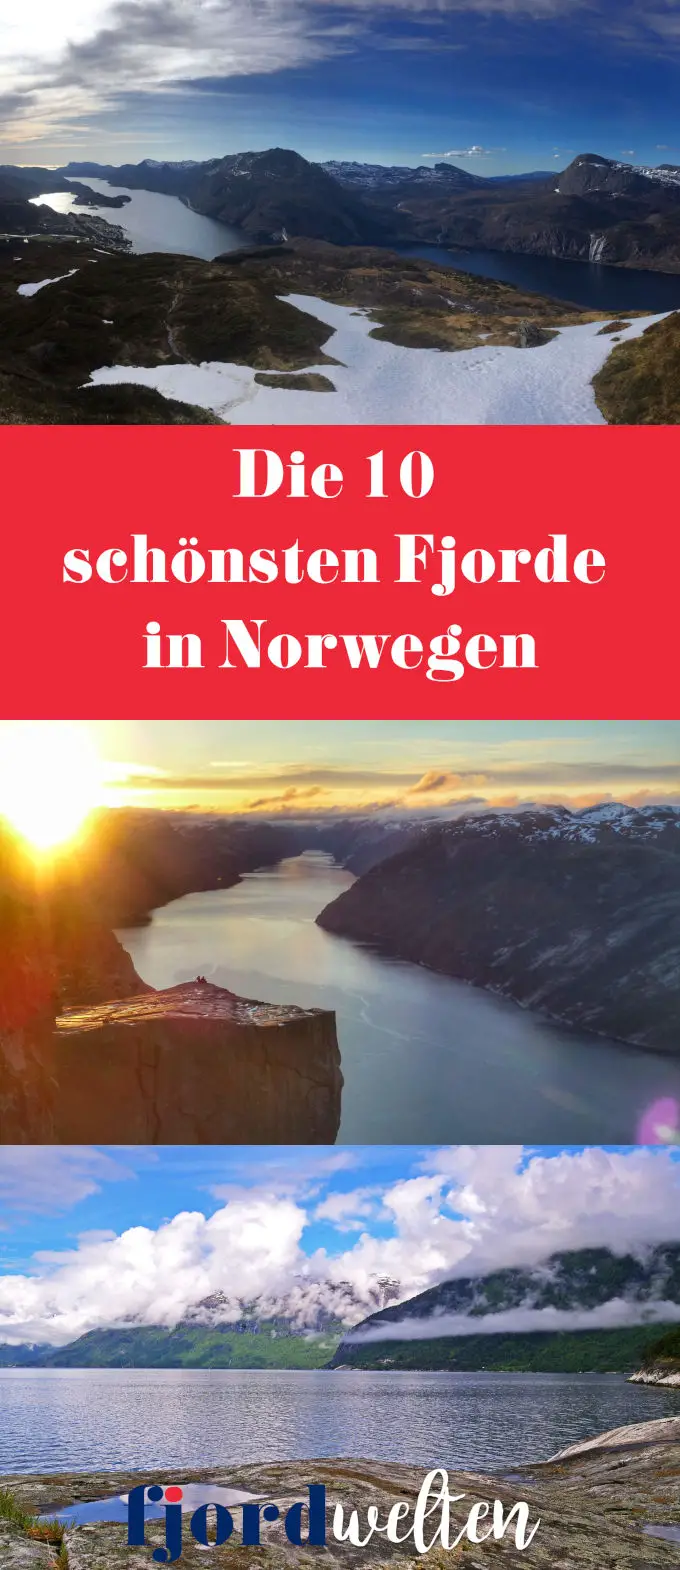 Die 10 schönsten Fjorde in Norwegen